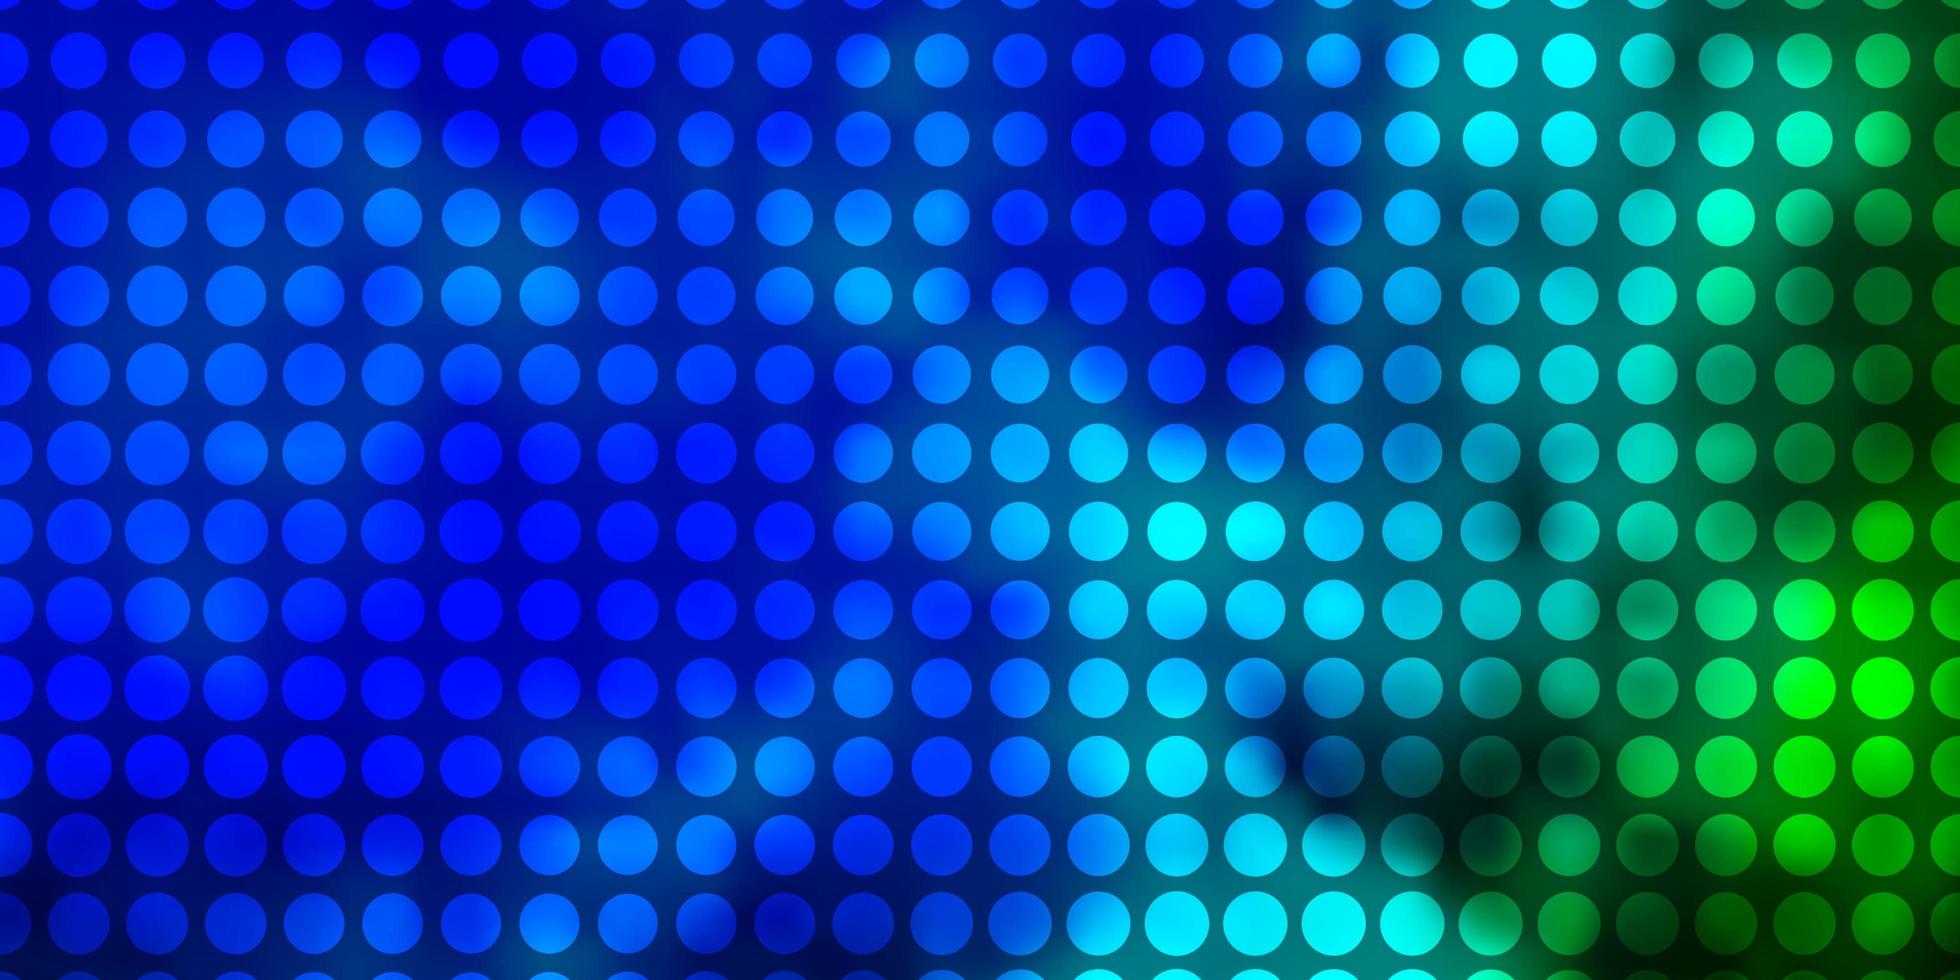 patrón de vector azul claro, verde con círculos